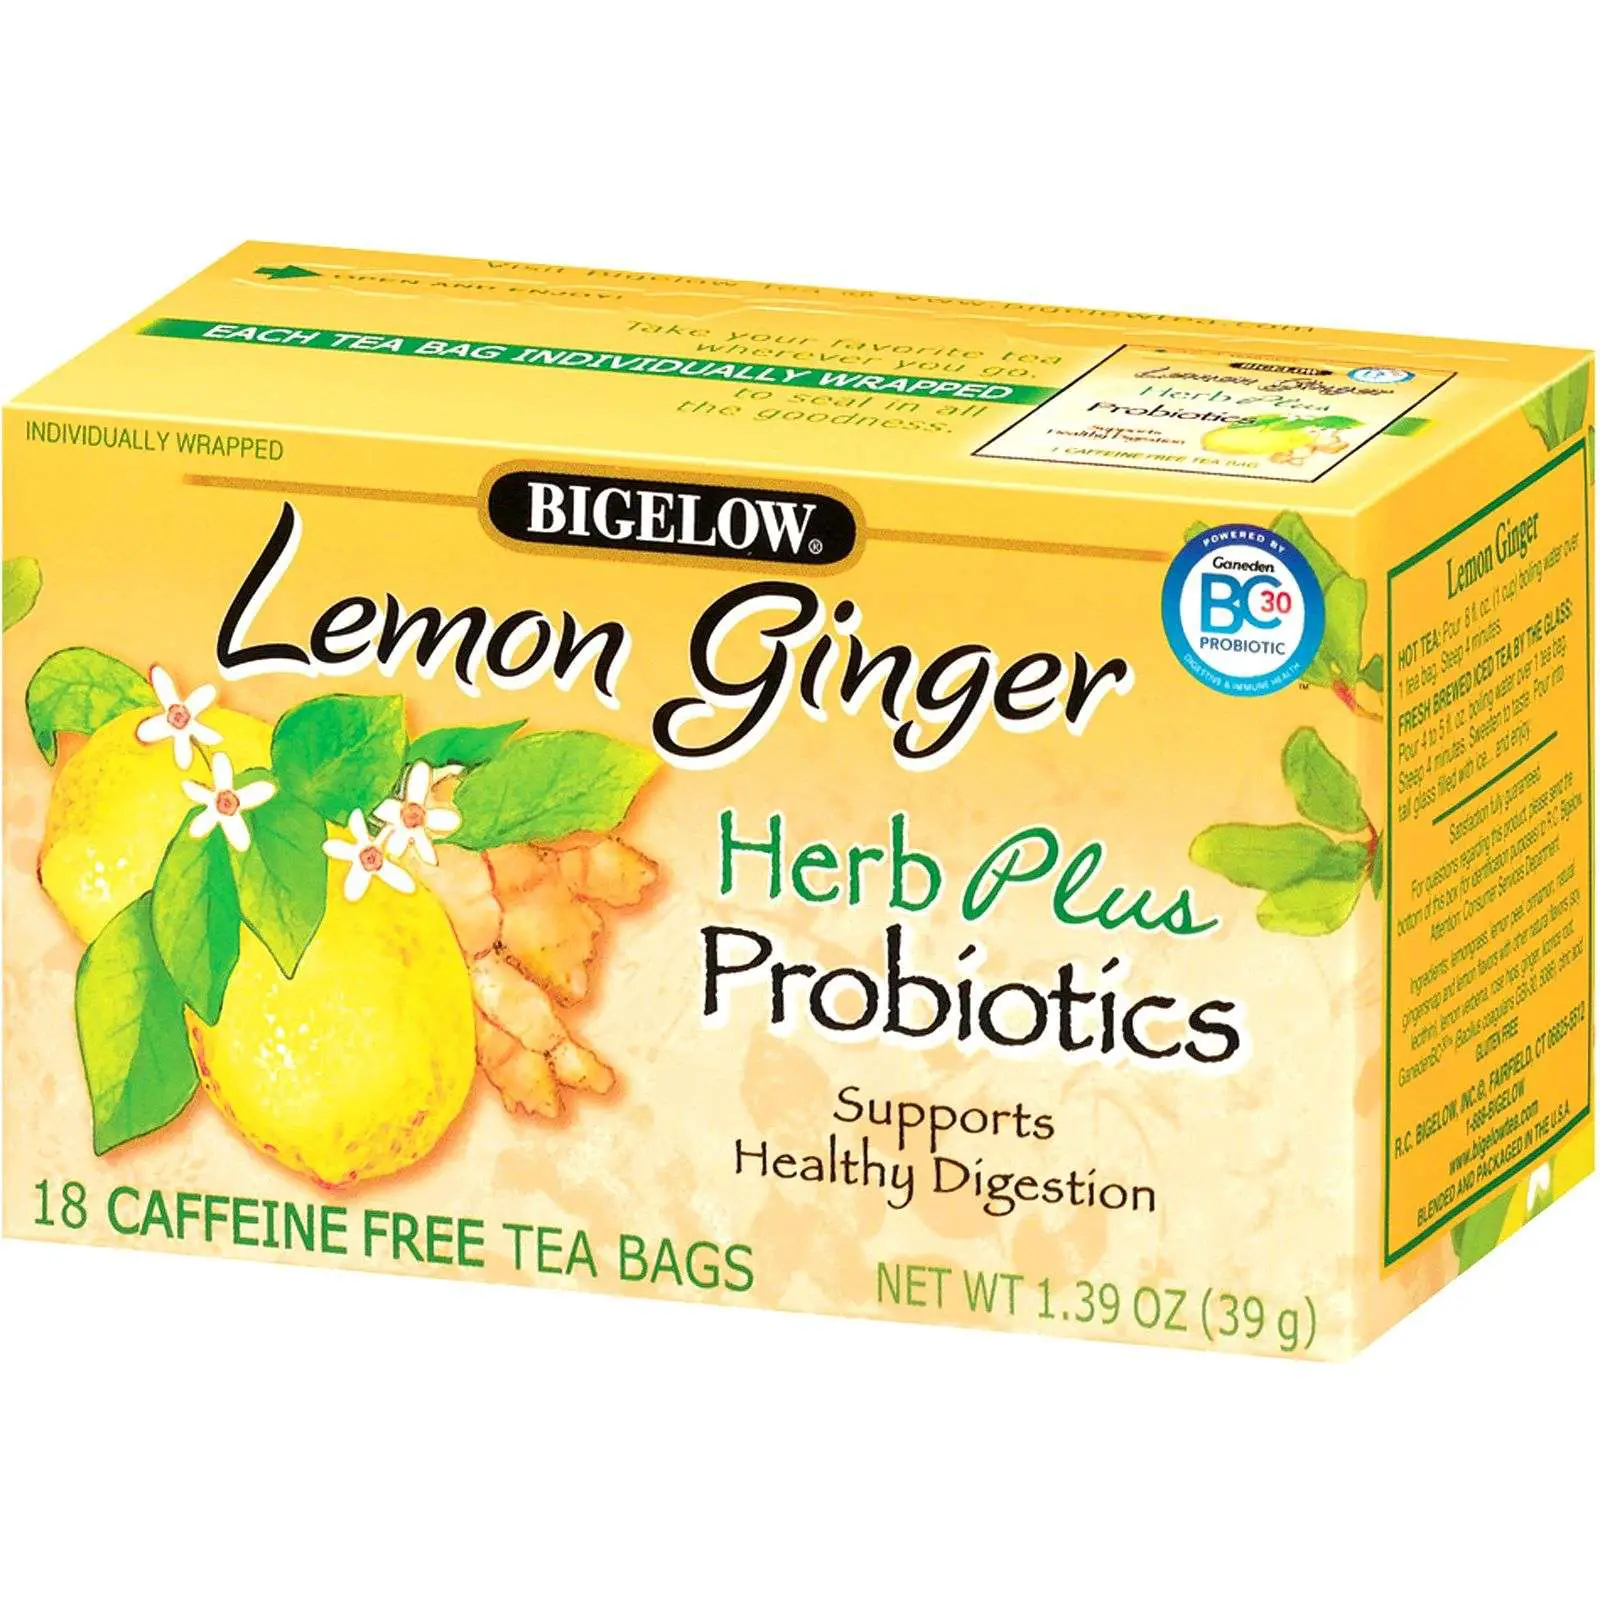 Bigelow, Herbal Tea Plus Probiotics, Lemon Ginger ...